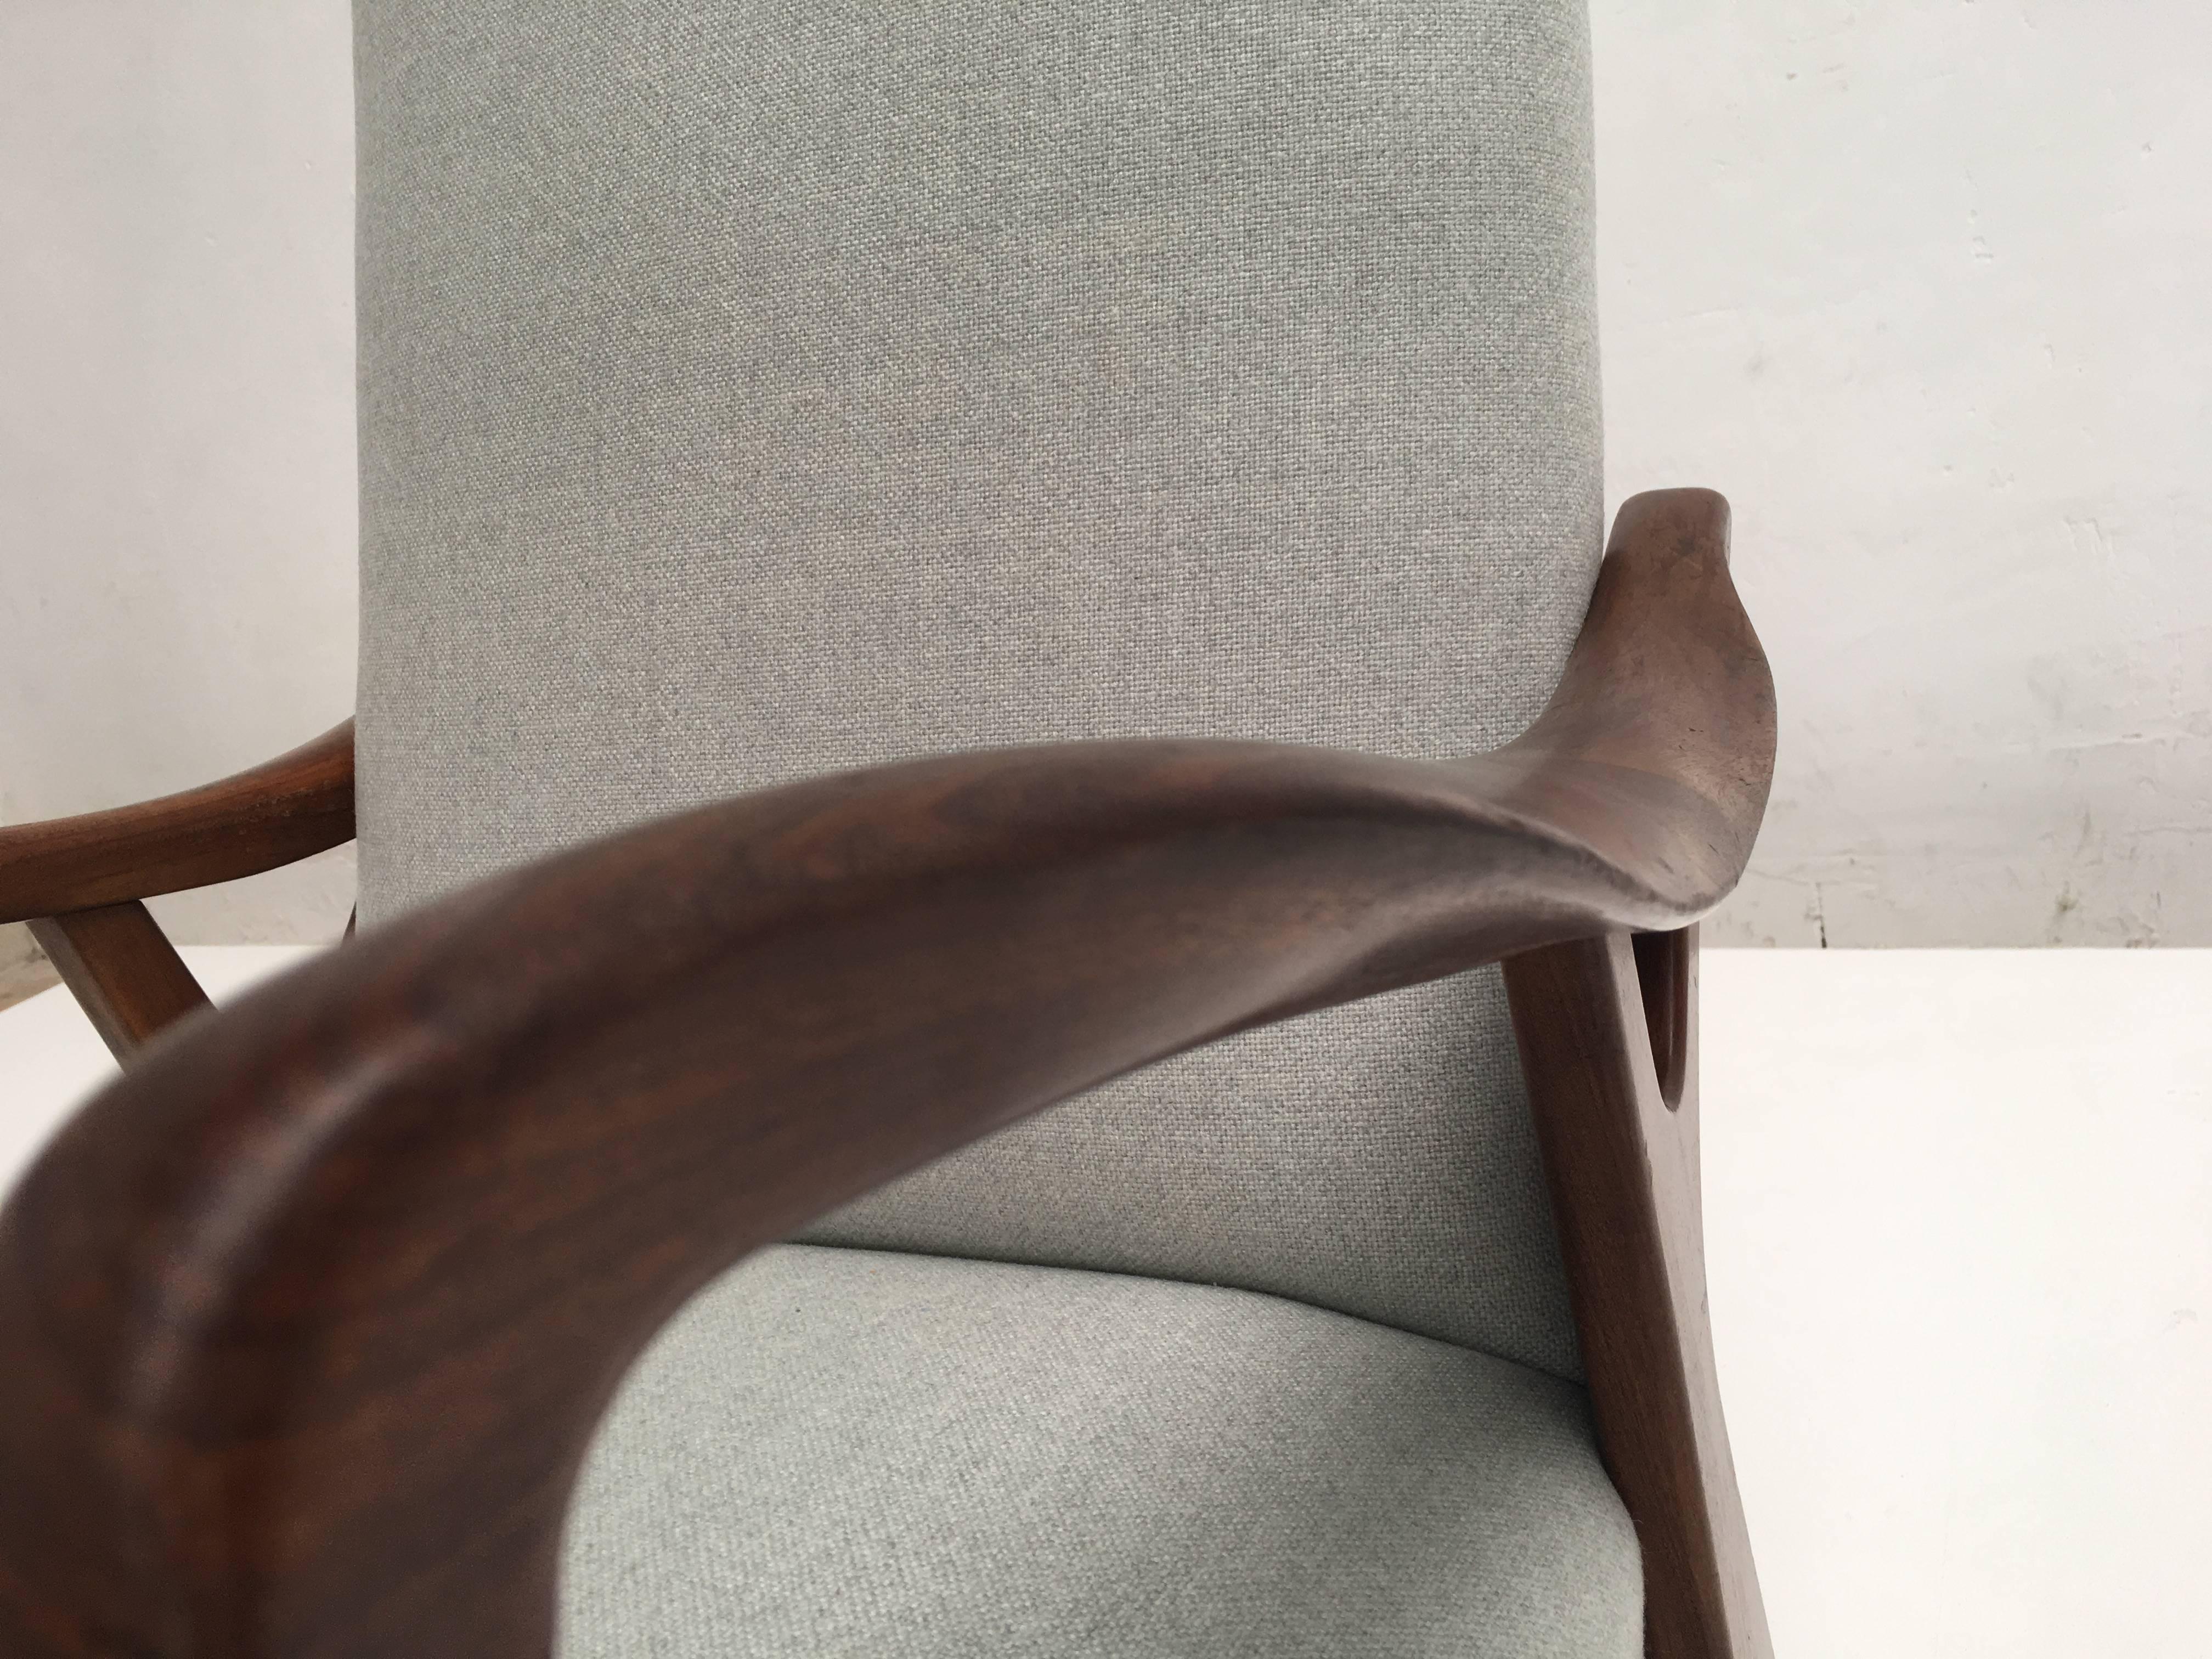 Chaise danoise à haut dossier avec de magnifiques accoudoirs organiques sculptés en teck massif

La chaise a été retapissée avec un tissu en laine mélangée vert menthe/gris de De Ploeg.

 